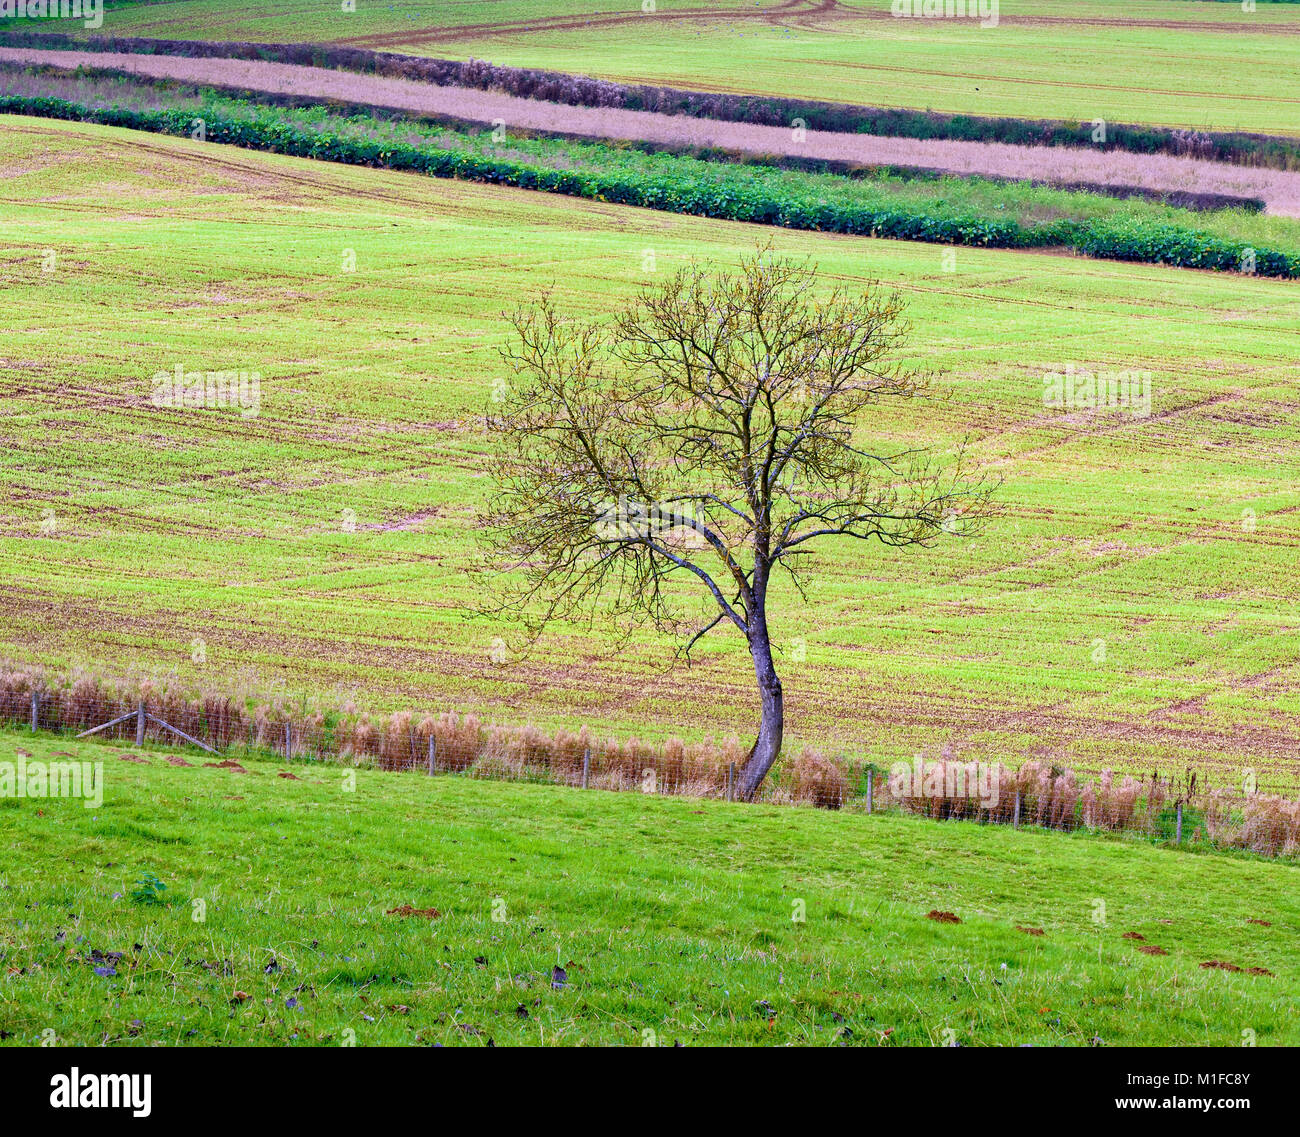 Un arbre isolé constitue un point central contre les champs du paysage distinctif des Cotswolds. Banque D'Images